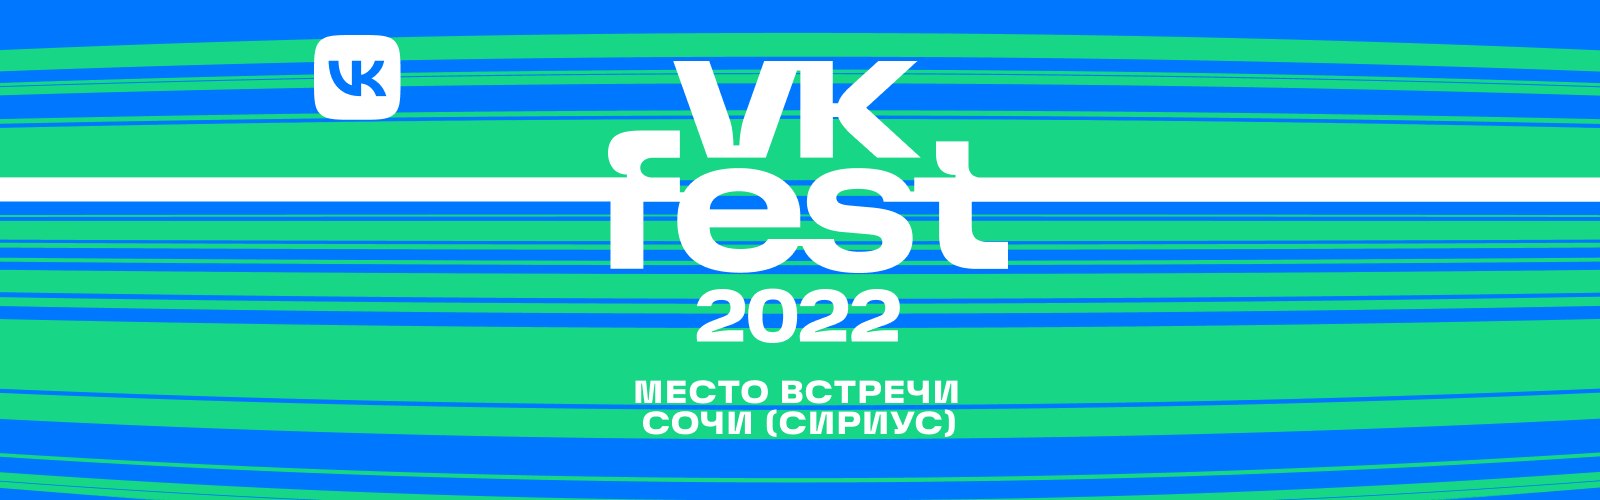 Концерты в сочи 2022 года. ВК фест логотип 2022. ВК фест 2022 Сочи. ВК фест 2022 афиша. ВК фест Сириус 2022.